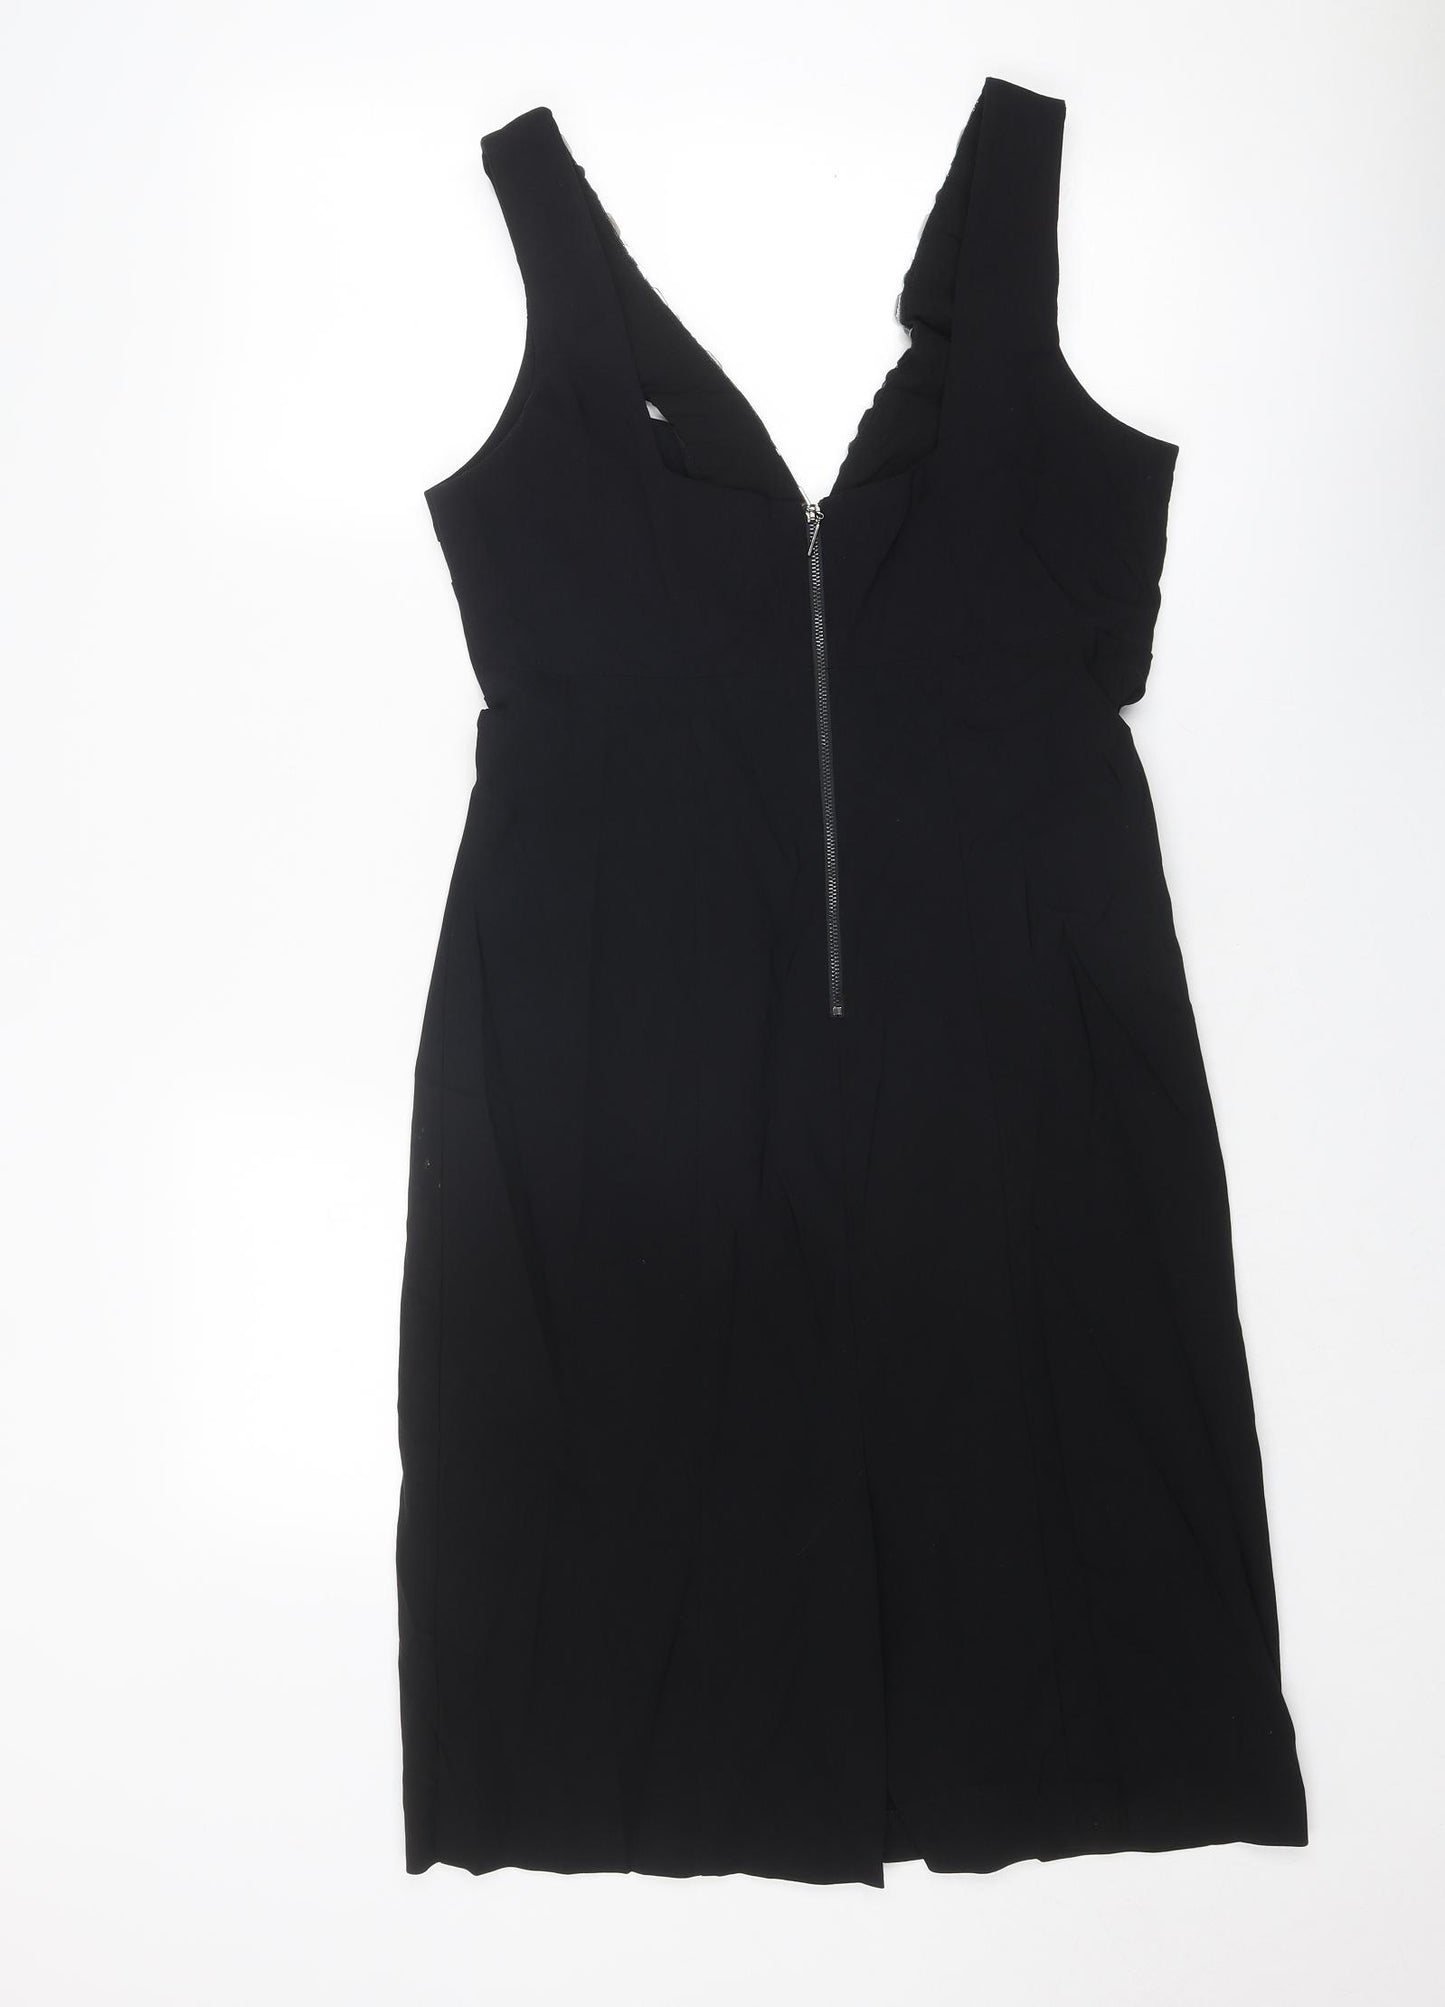 Debenhams Womens Black Polyester Pencil Dress Size 16 V-Neck Zip - Embellished Neckline